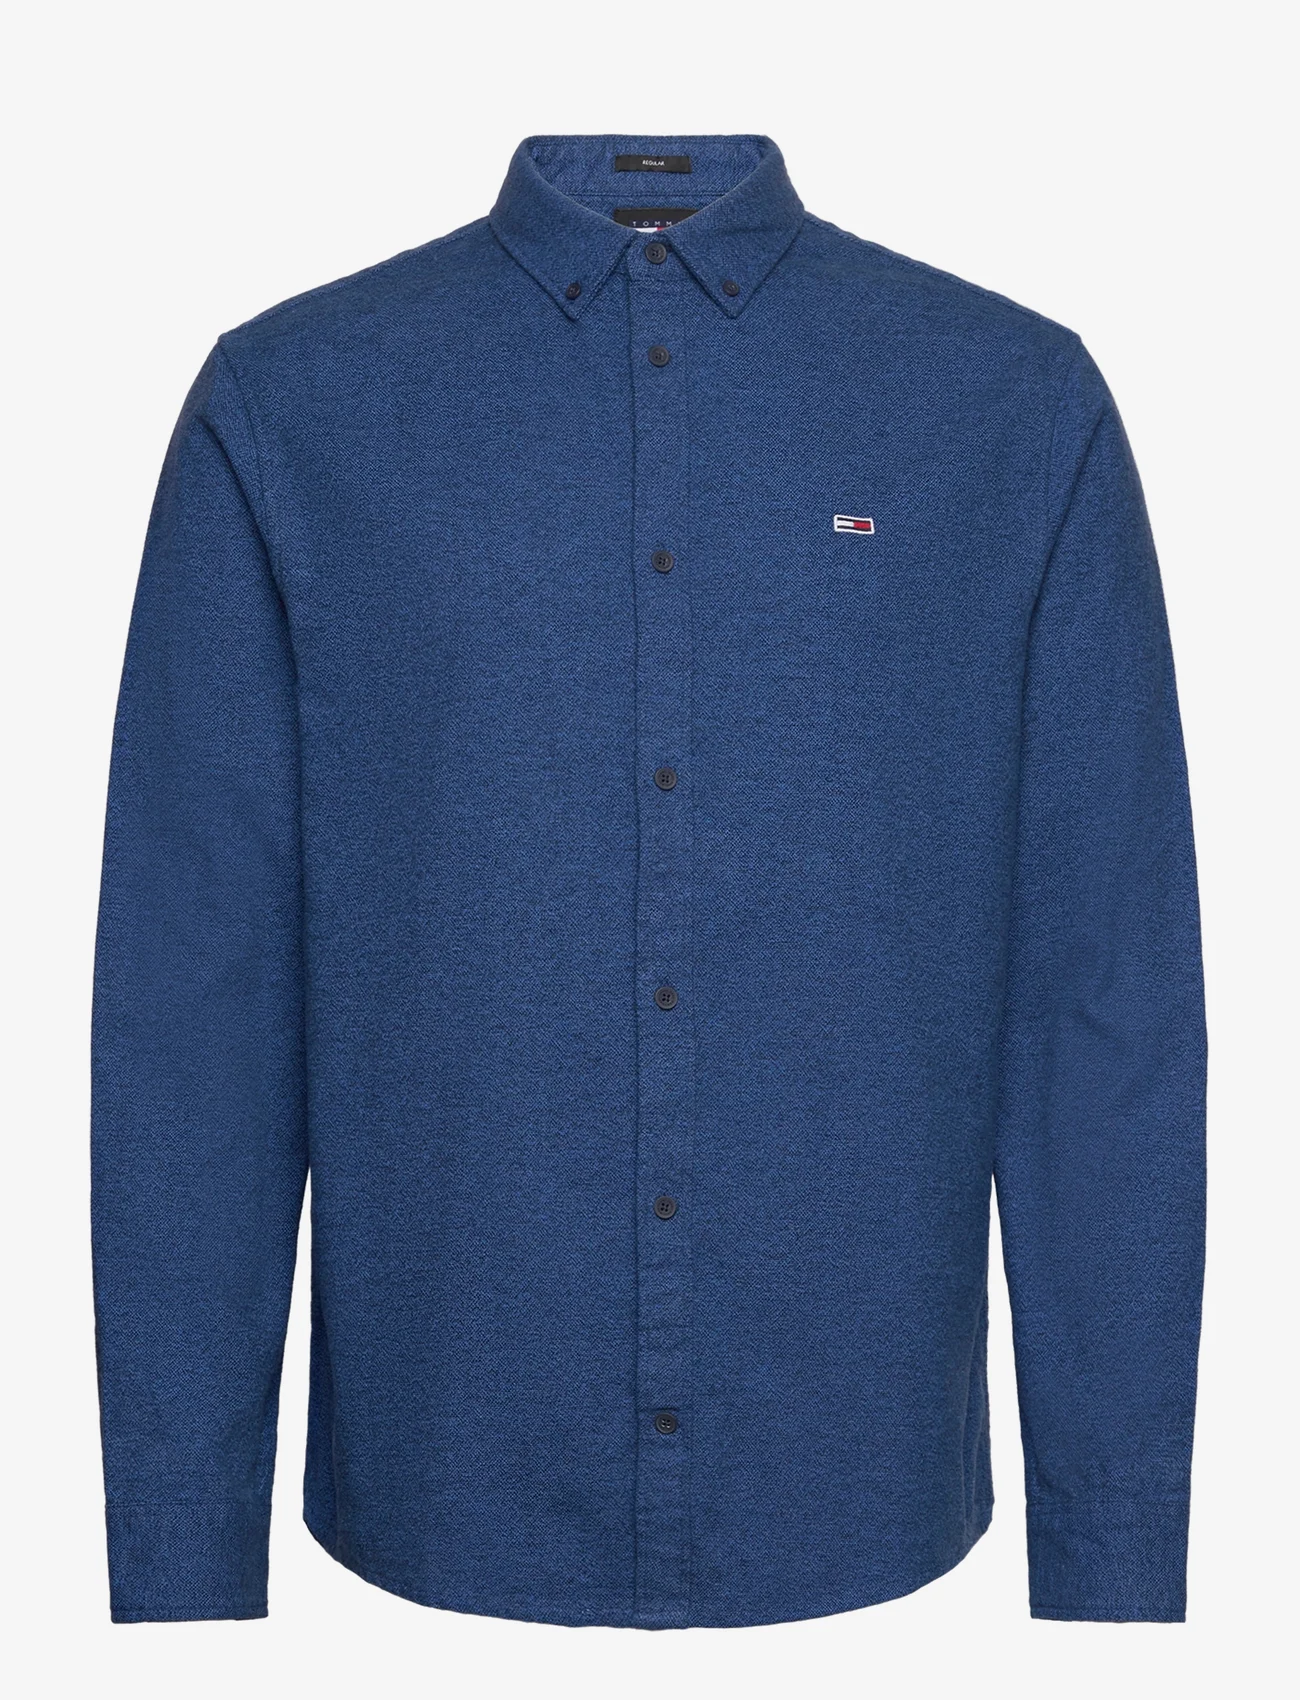 Tommy Jeans - TJM REG BRUSHED GRINDLE SHIRT - basic skjorter - meridian blue - 0